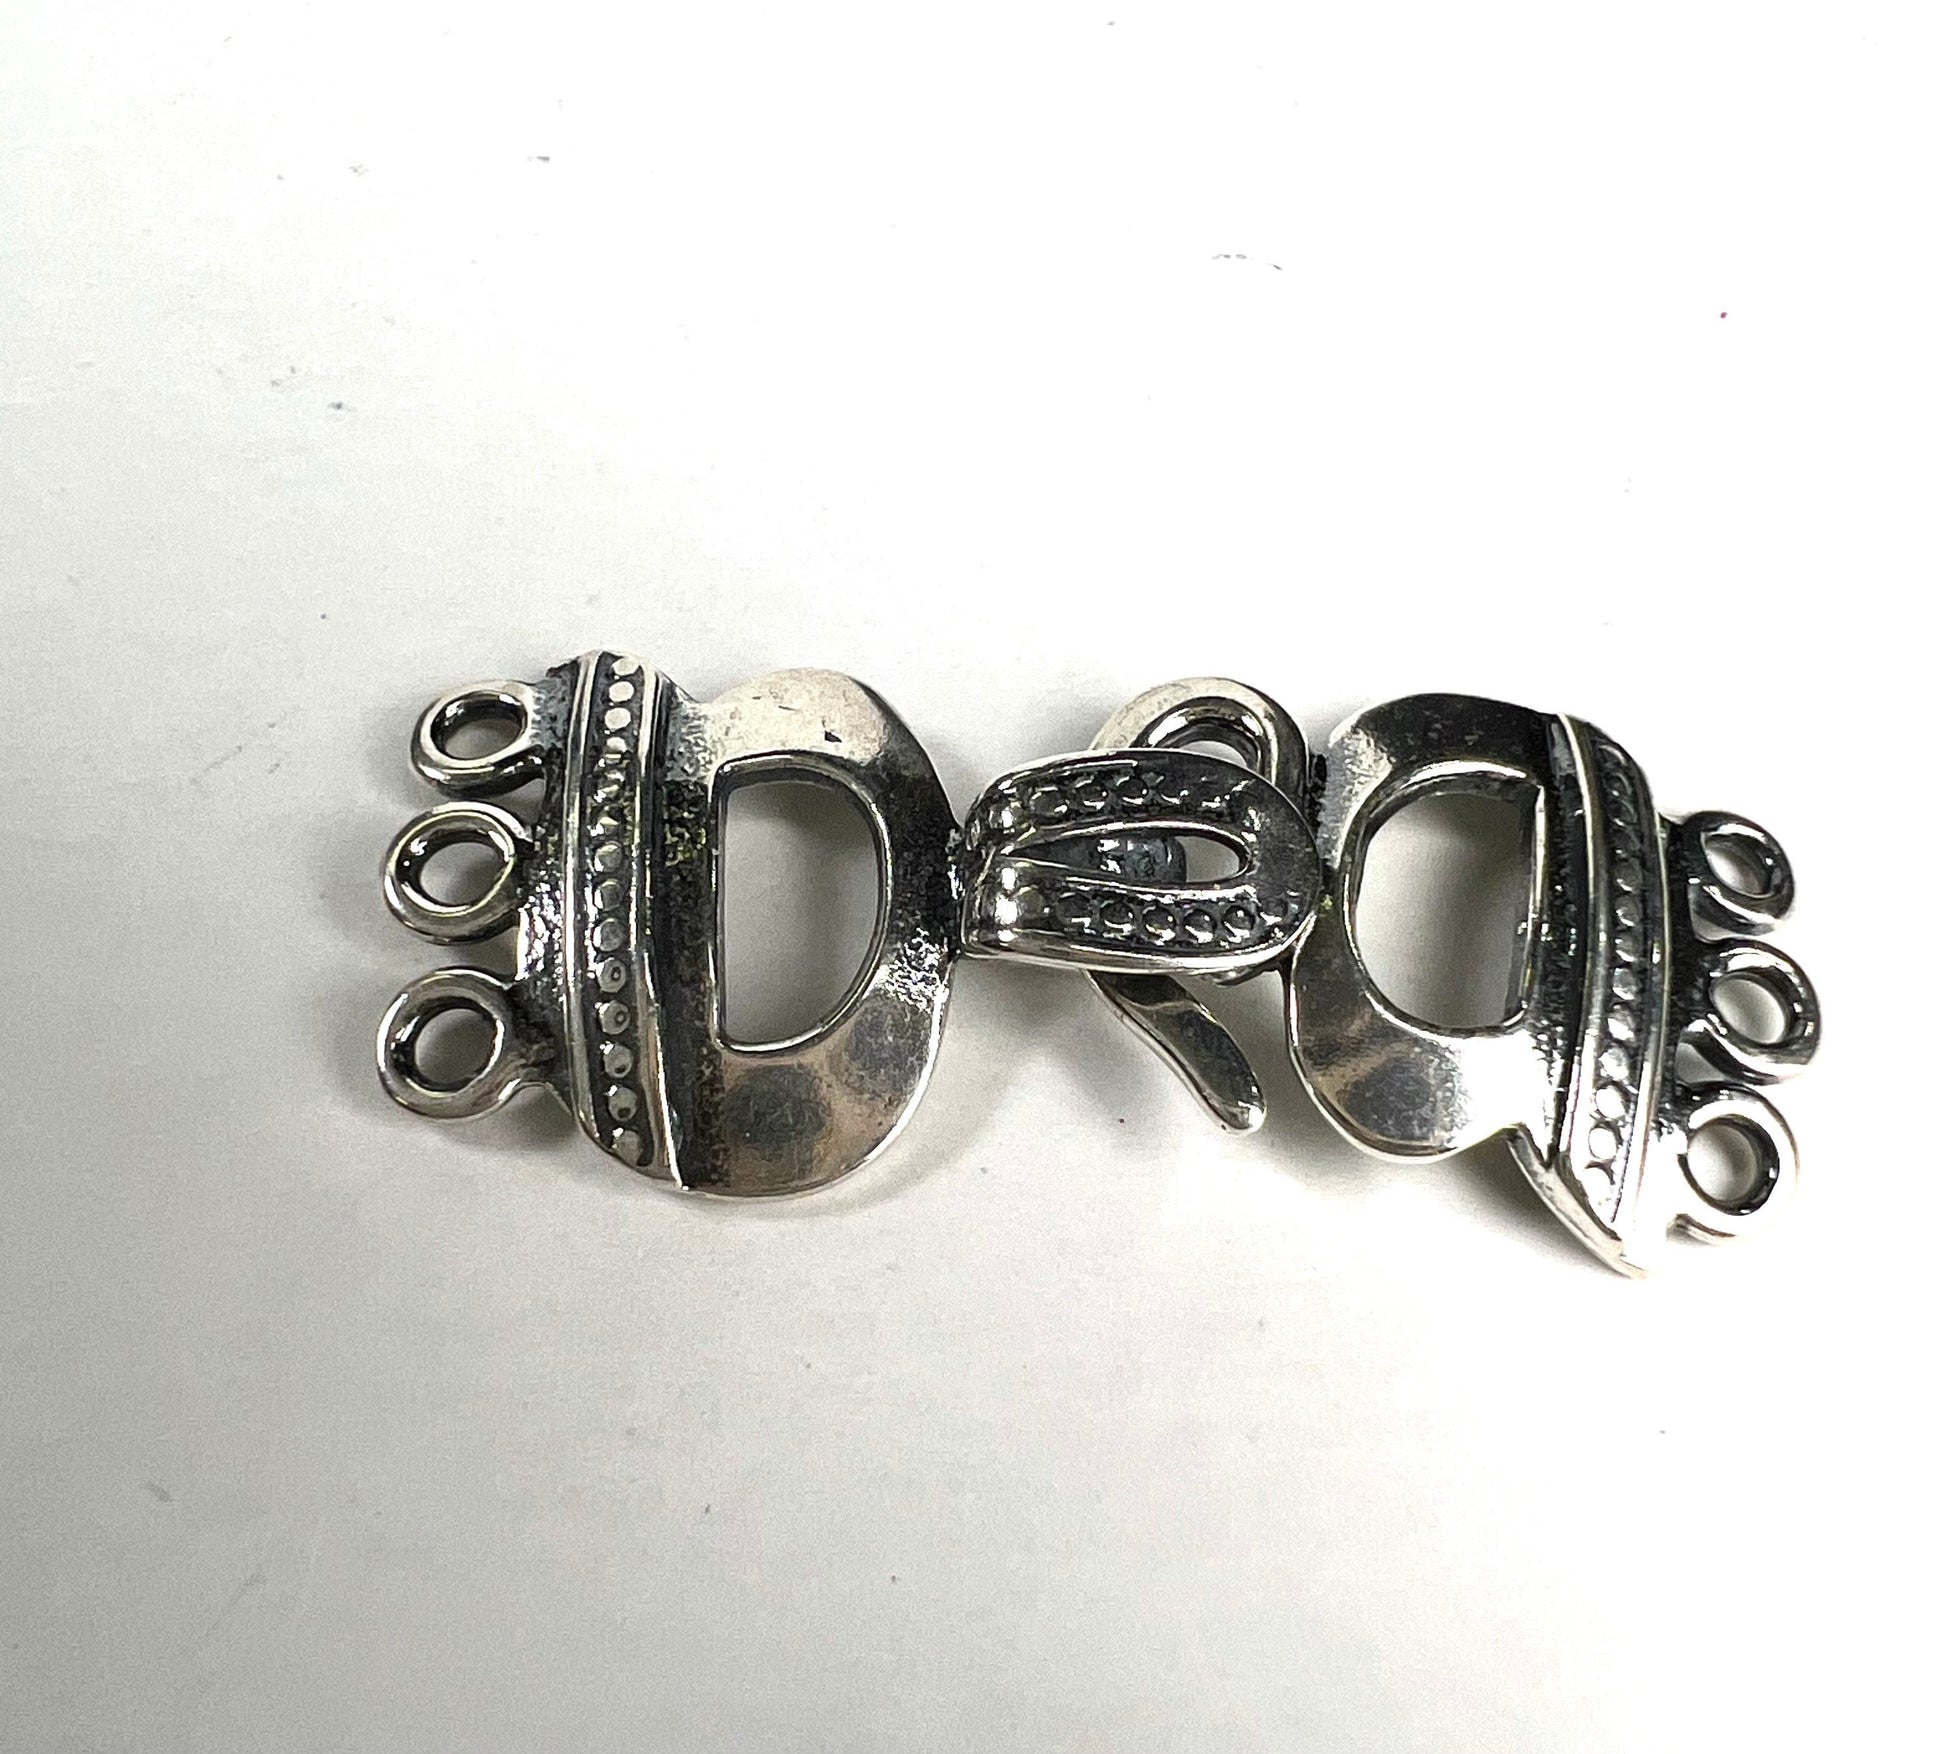 925 Sterling silver 3 loop bali handmade vintage style fancy hook clasp jewelry making findings.1 set 925 stamped